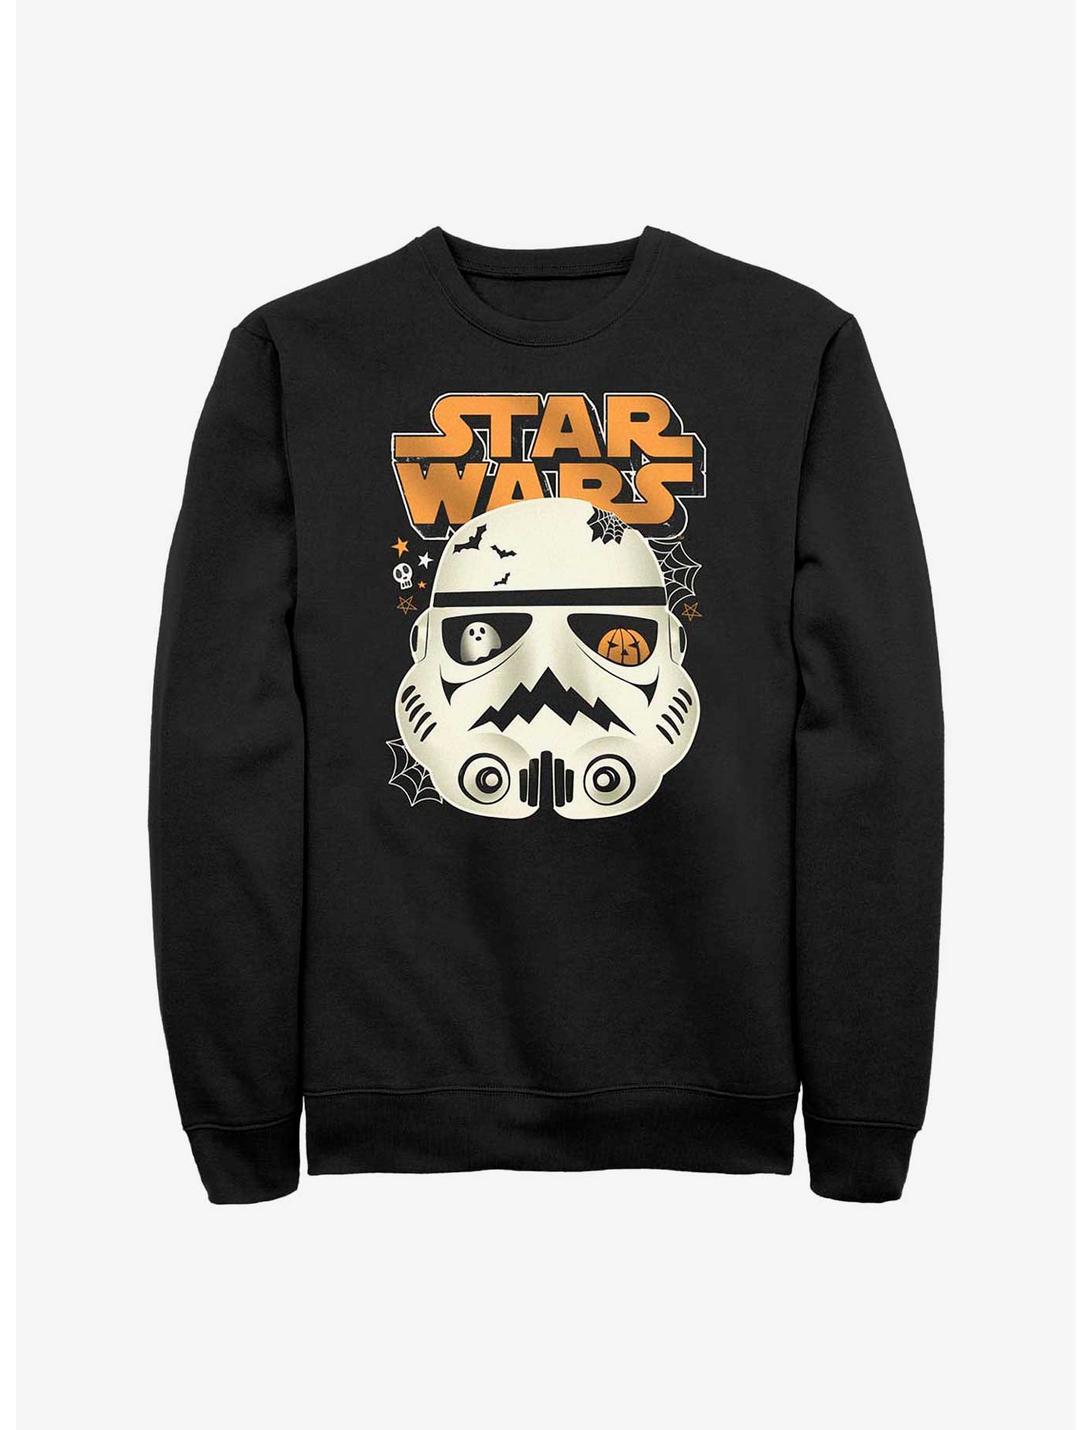 Star Wars Scary Troops Sweatshirt, BLACK, hi-res